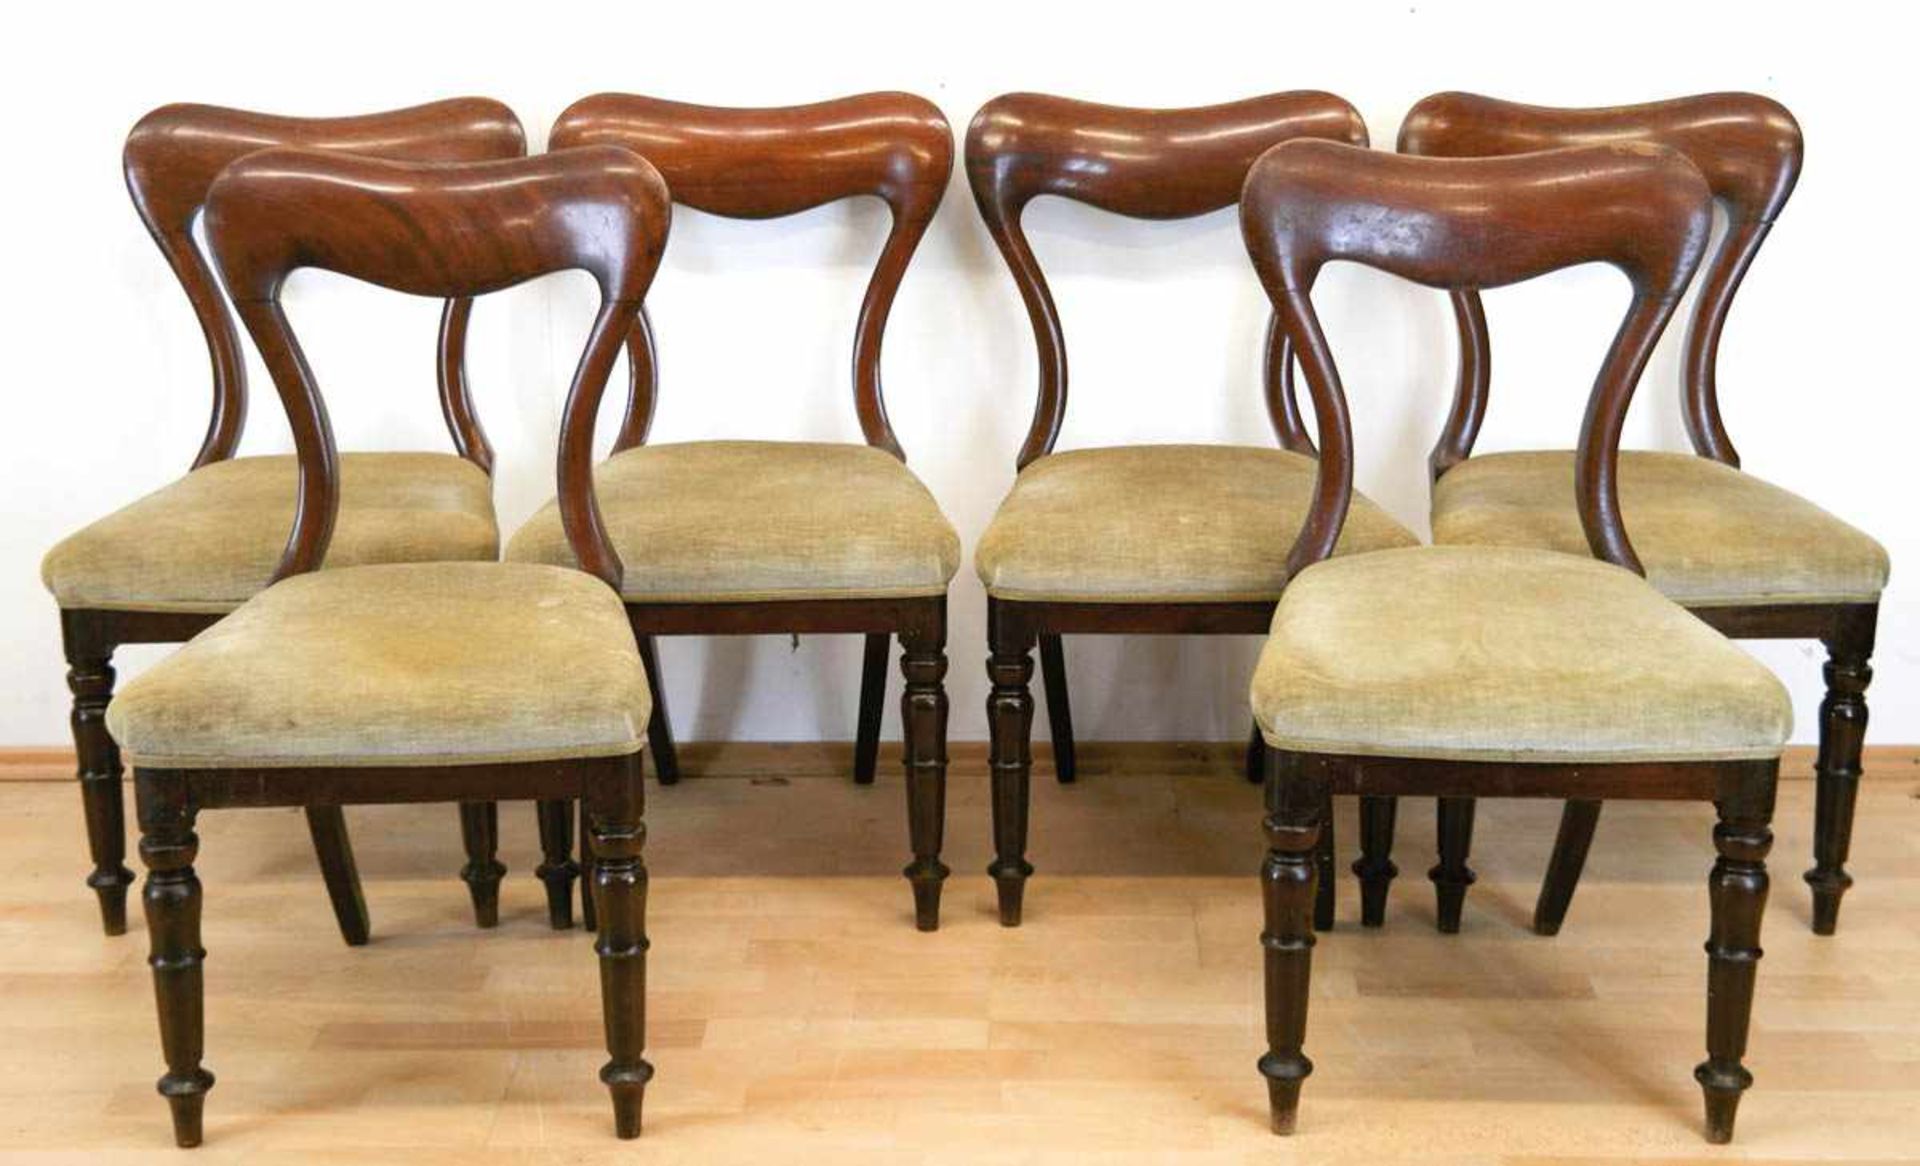 6 Stühle, Mahagoni um 1880, auf gedrechselten Beinen, restaurierungsbedürftig